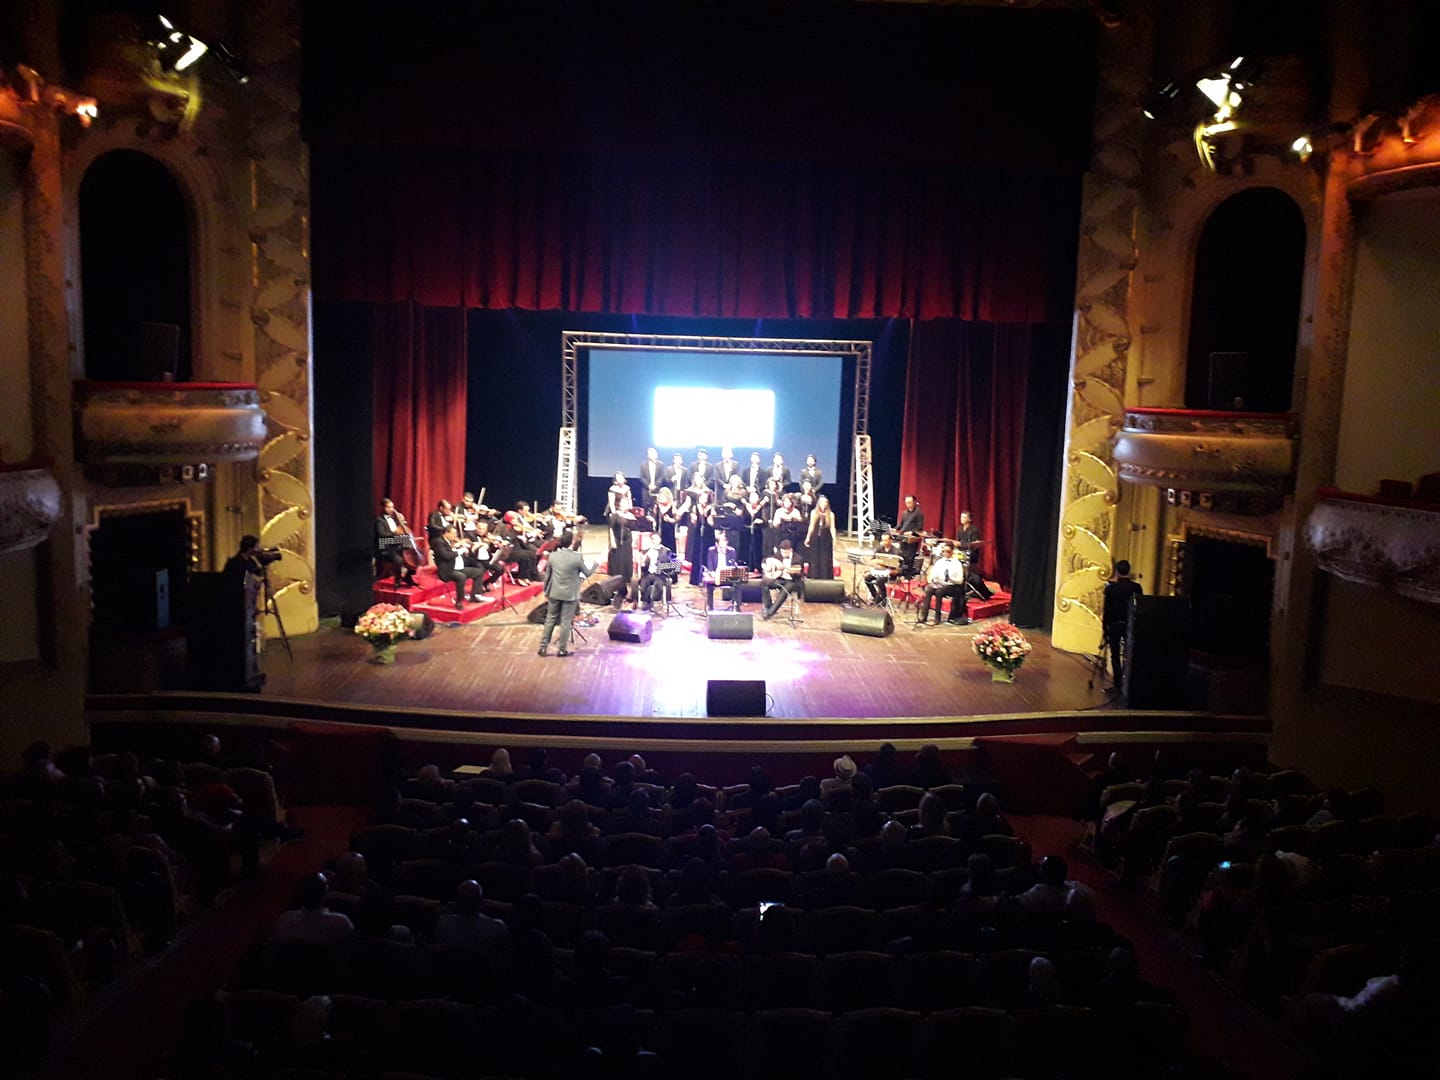 مجموعة "حلم" الموسيقية - المسرح البلدي بتونس العاصمة